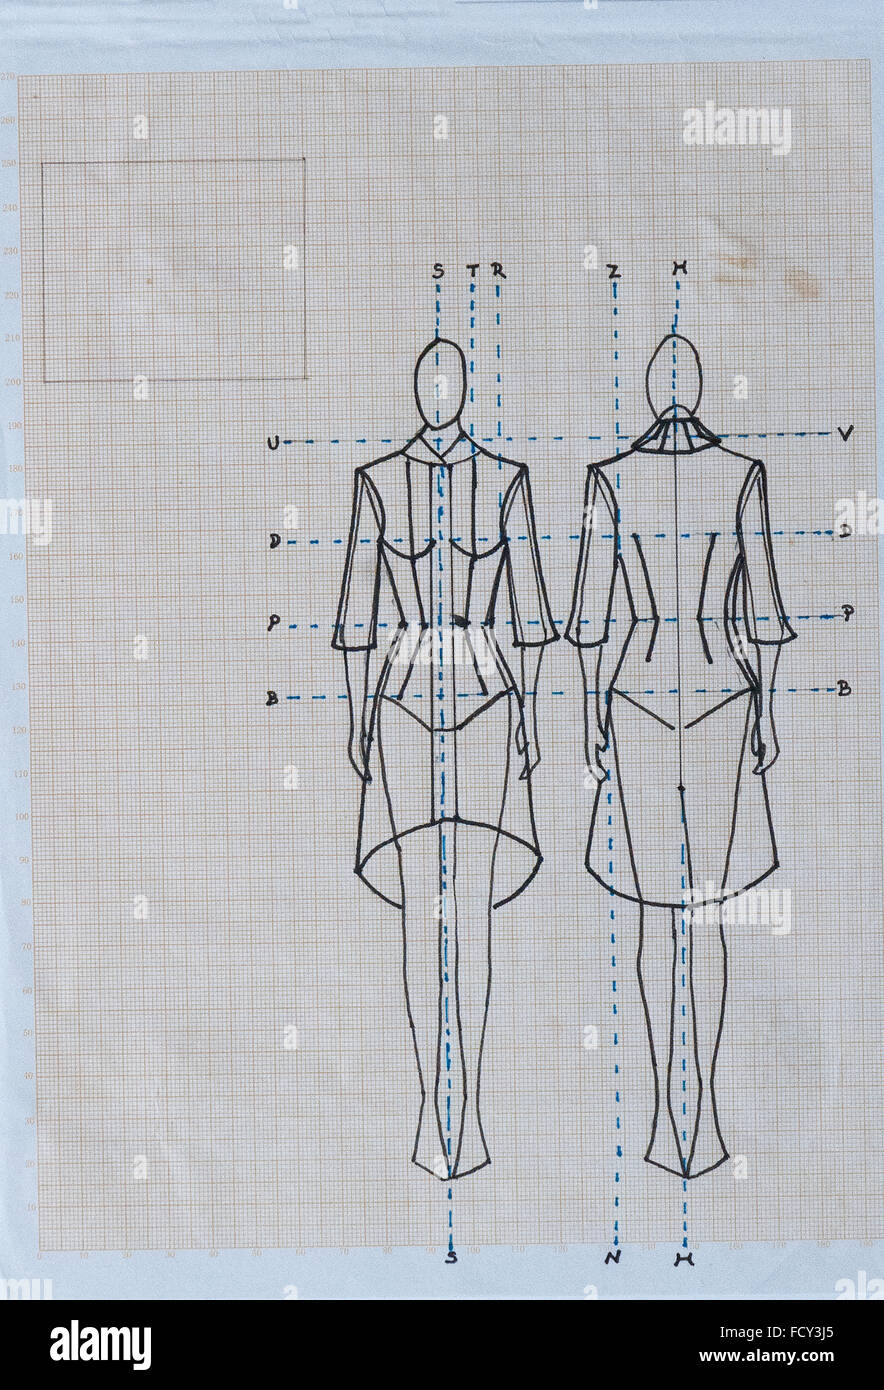 Technische Mode Zeichnen einer Frau Jacke oder Mantel Stockfotografie -  Alamy